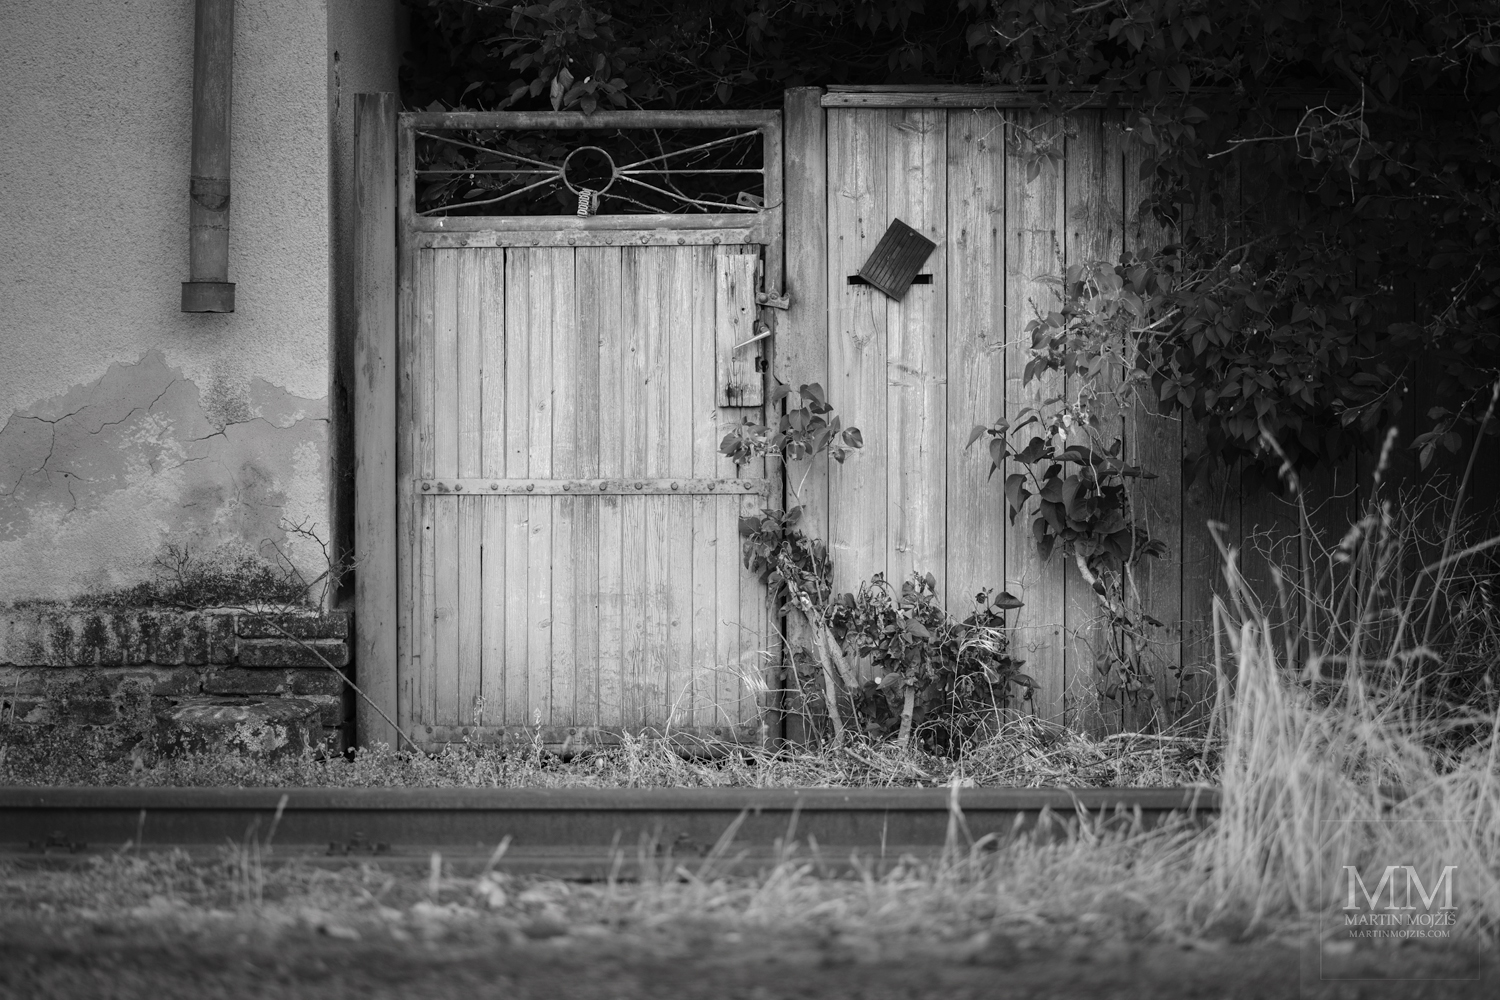 Branka do zahrady u kolejí. Umělecká černobílá fotografie s názvem PŘED BRANKOU – KOLEJE. Fotograf Martin Mojžíš.